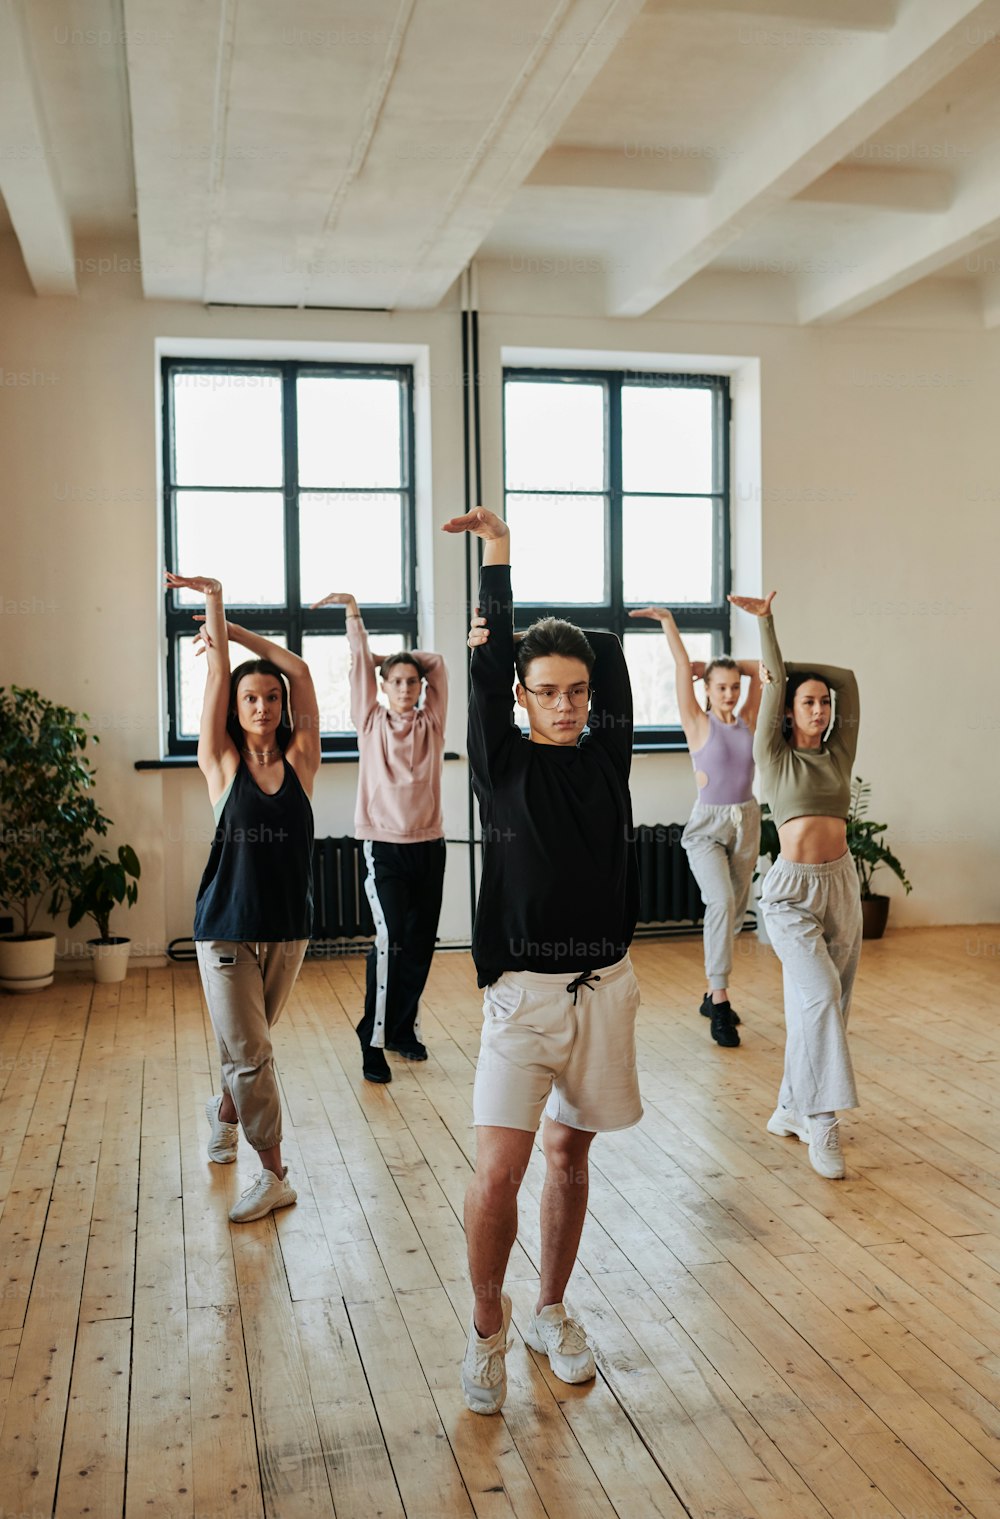 공연 그룹의 젊은 십대 남성 리더가 스튜디오에서 훈련하는 동안 소녀들과 남자 그룹에게 보그 댄스 연습을 보여주고 있다